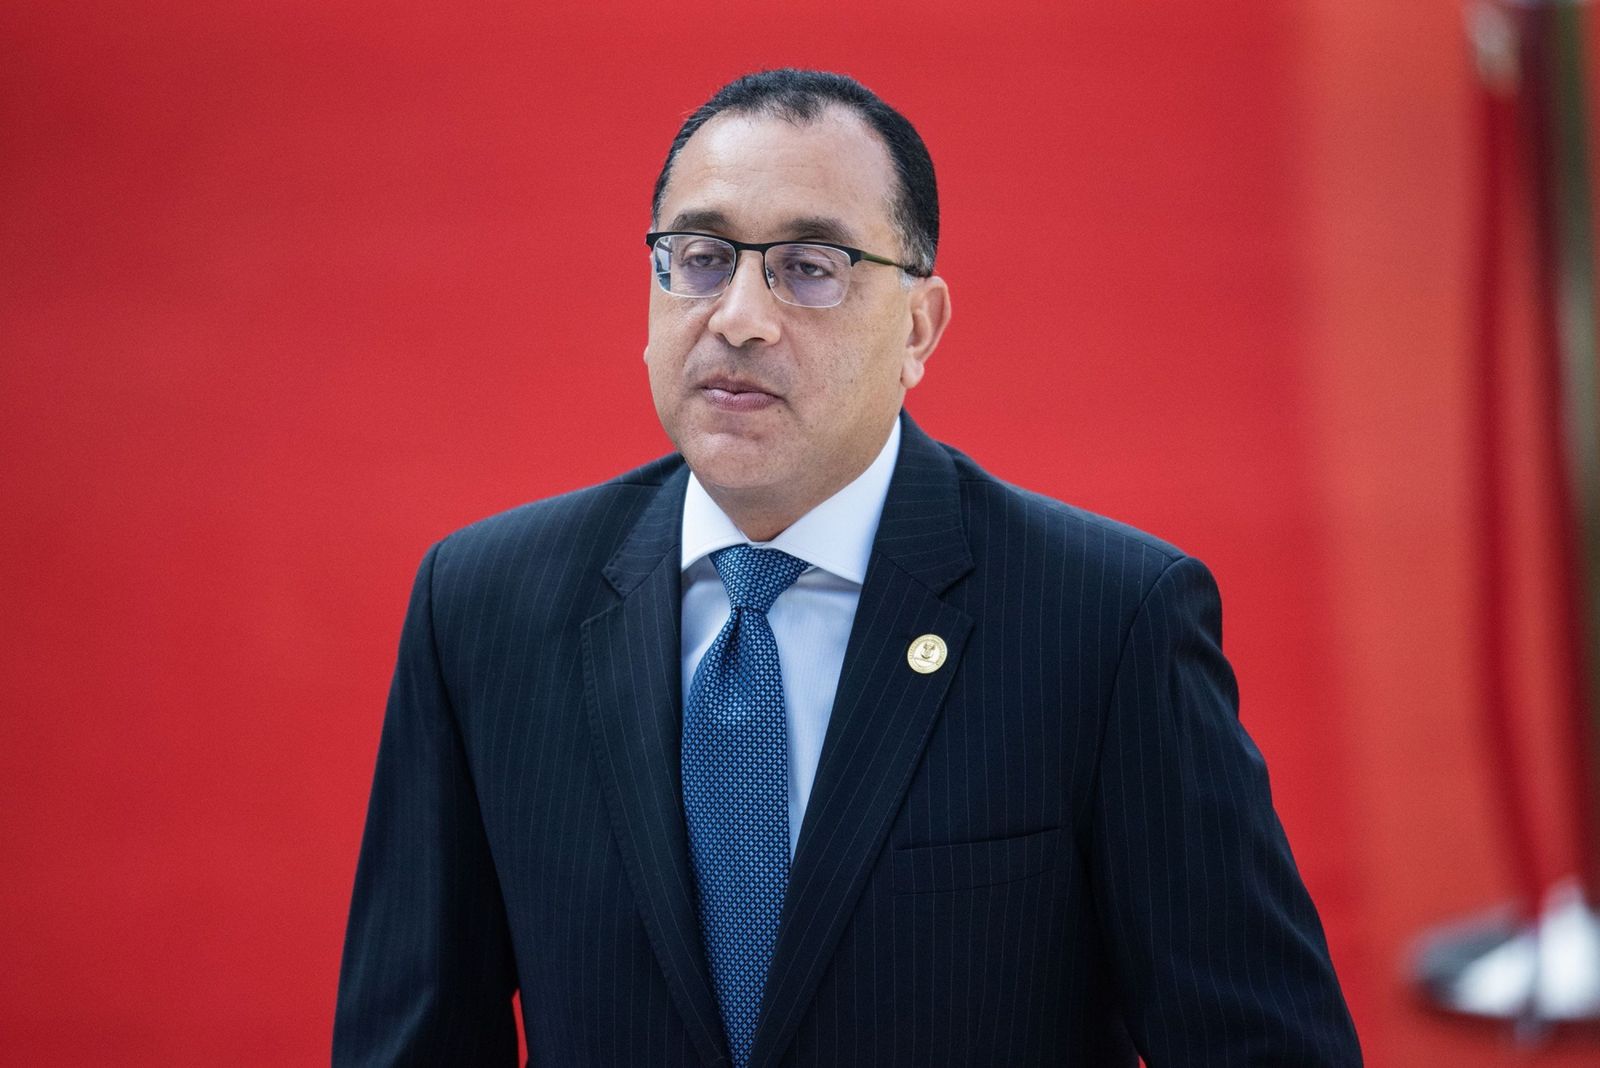 مصر تتسلم الدفعة الثانية من صفقة رأس الحكمة بقيمة 14 مليار دولار